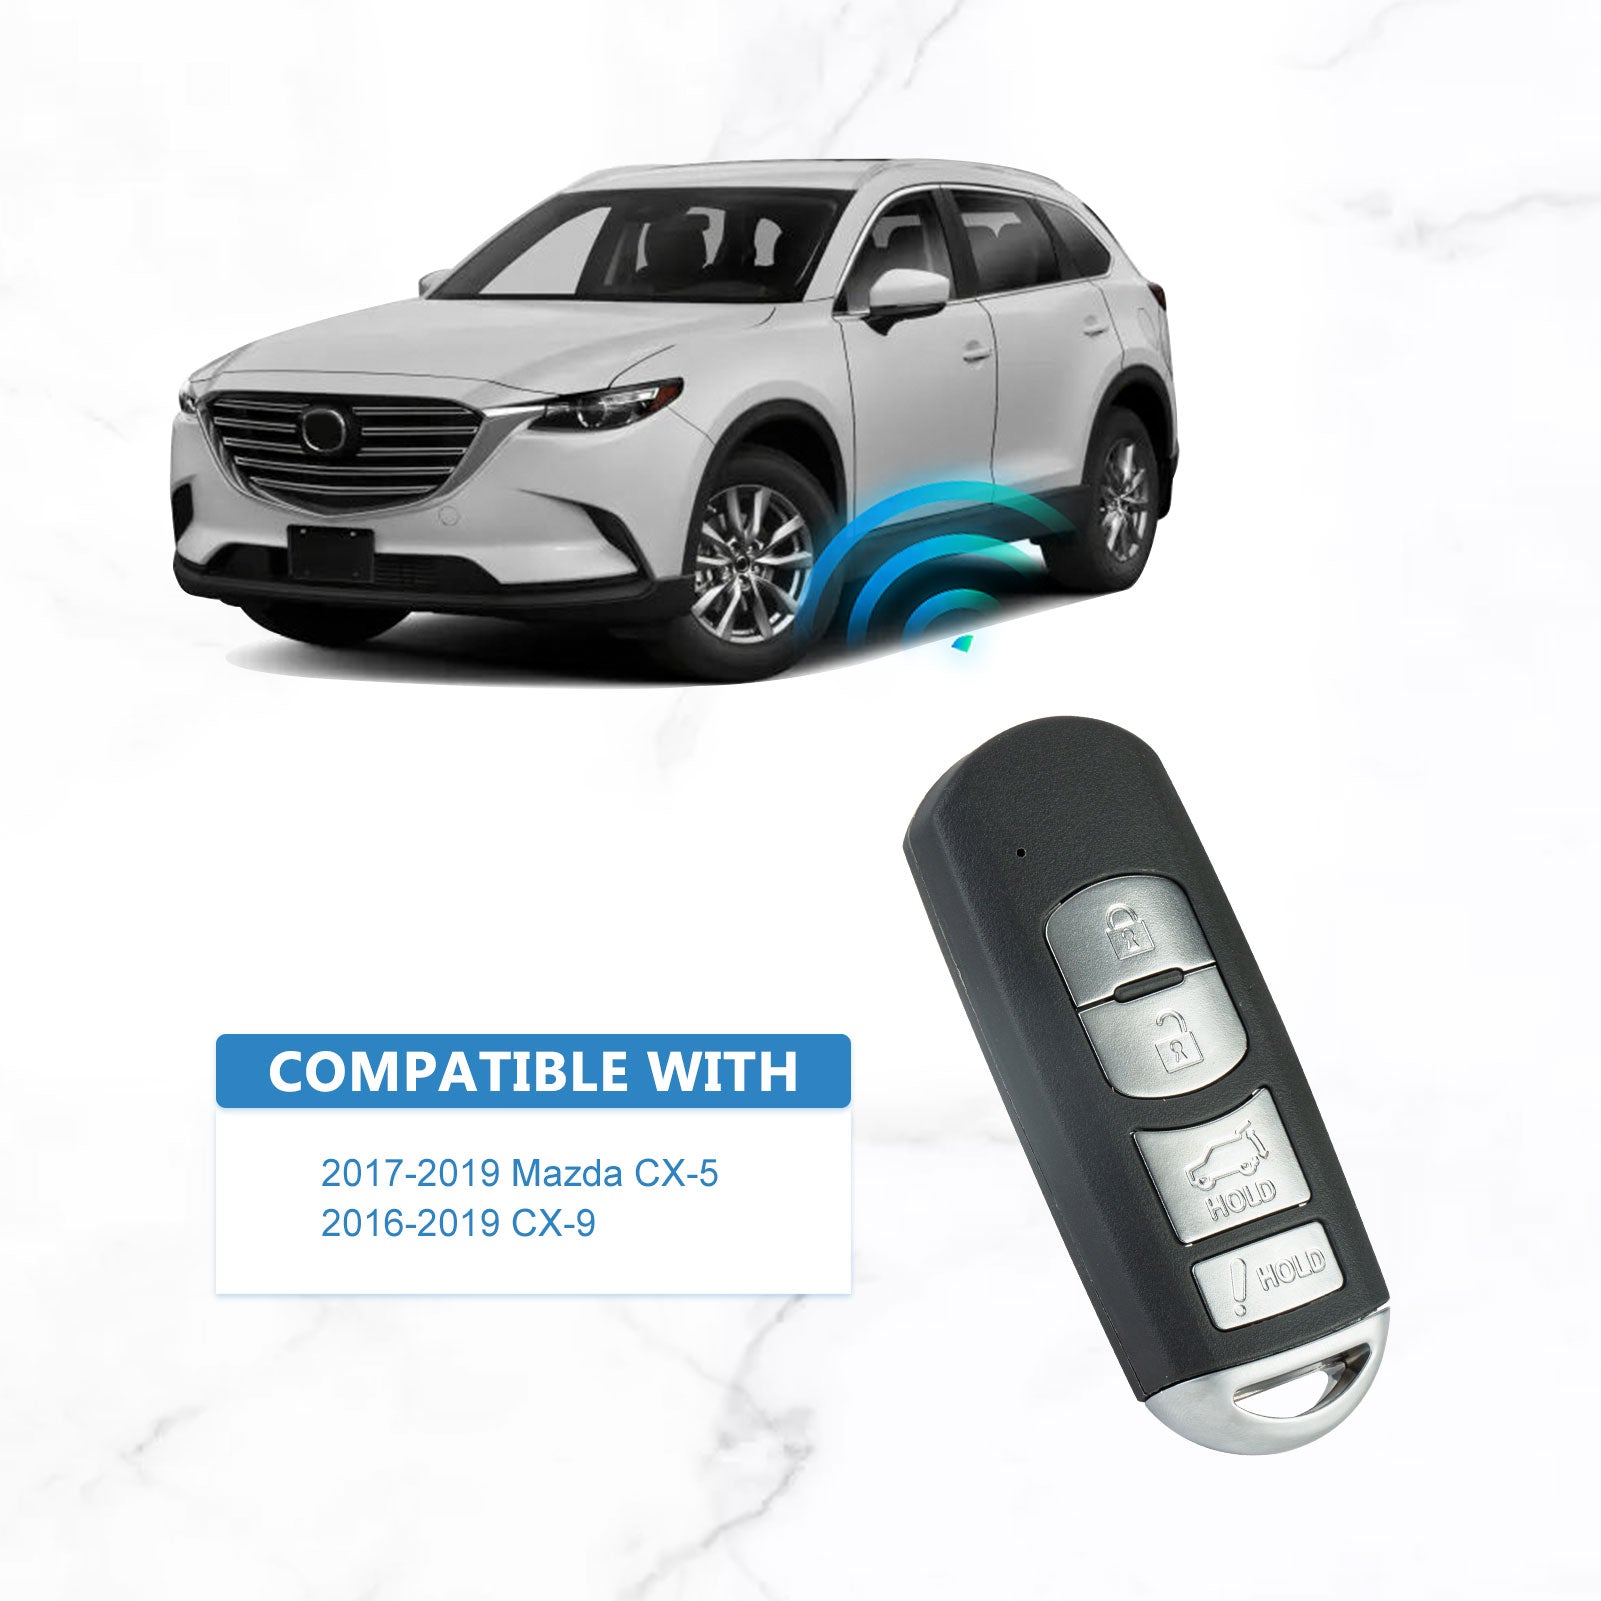 315MHZ Car Key Replacement for 2017-2019 Mazda CX-5 2016-2019 CX-9 Smart Remote Key 4B WAZSKE13D01  KR-M4RC